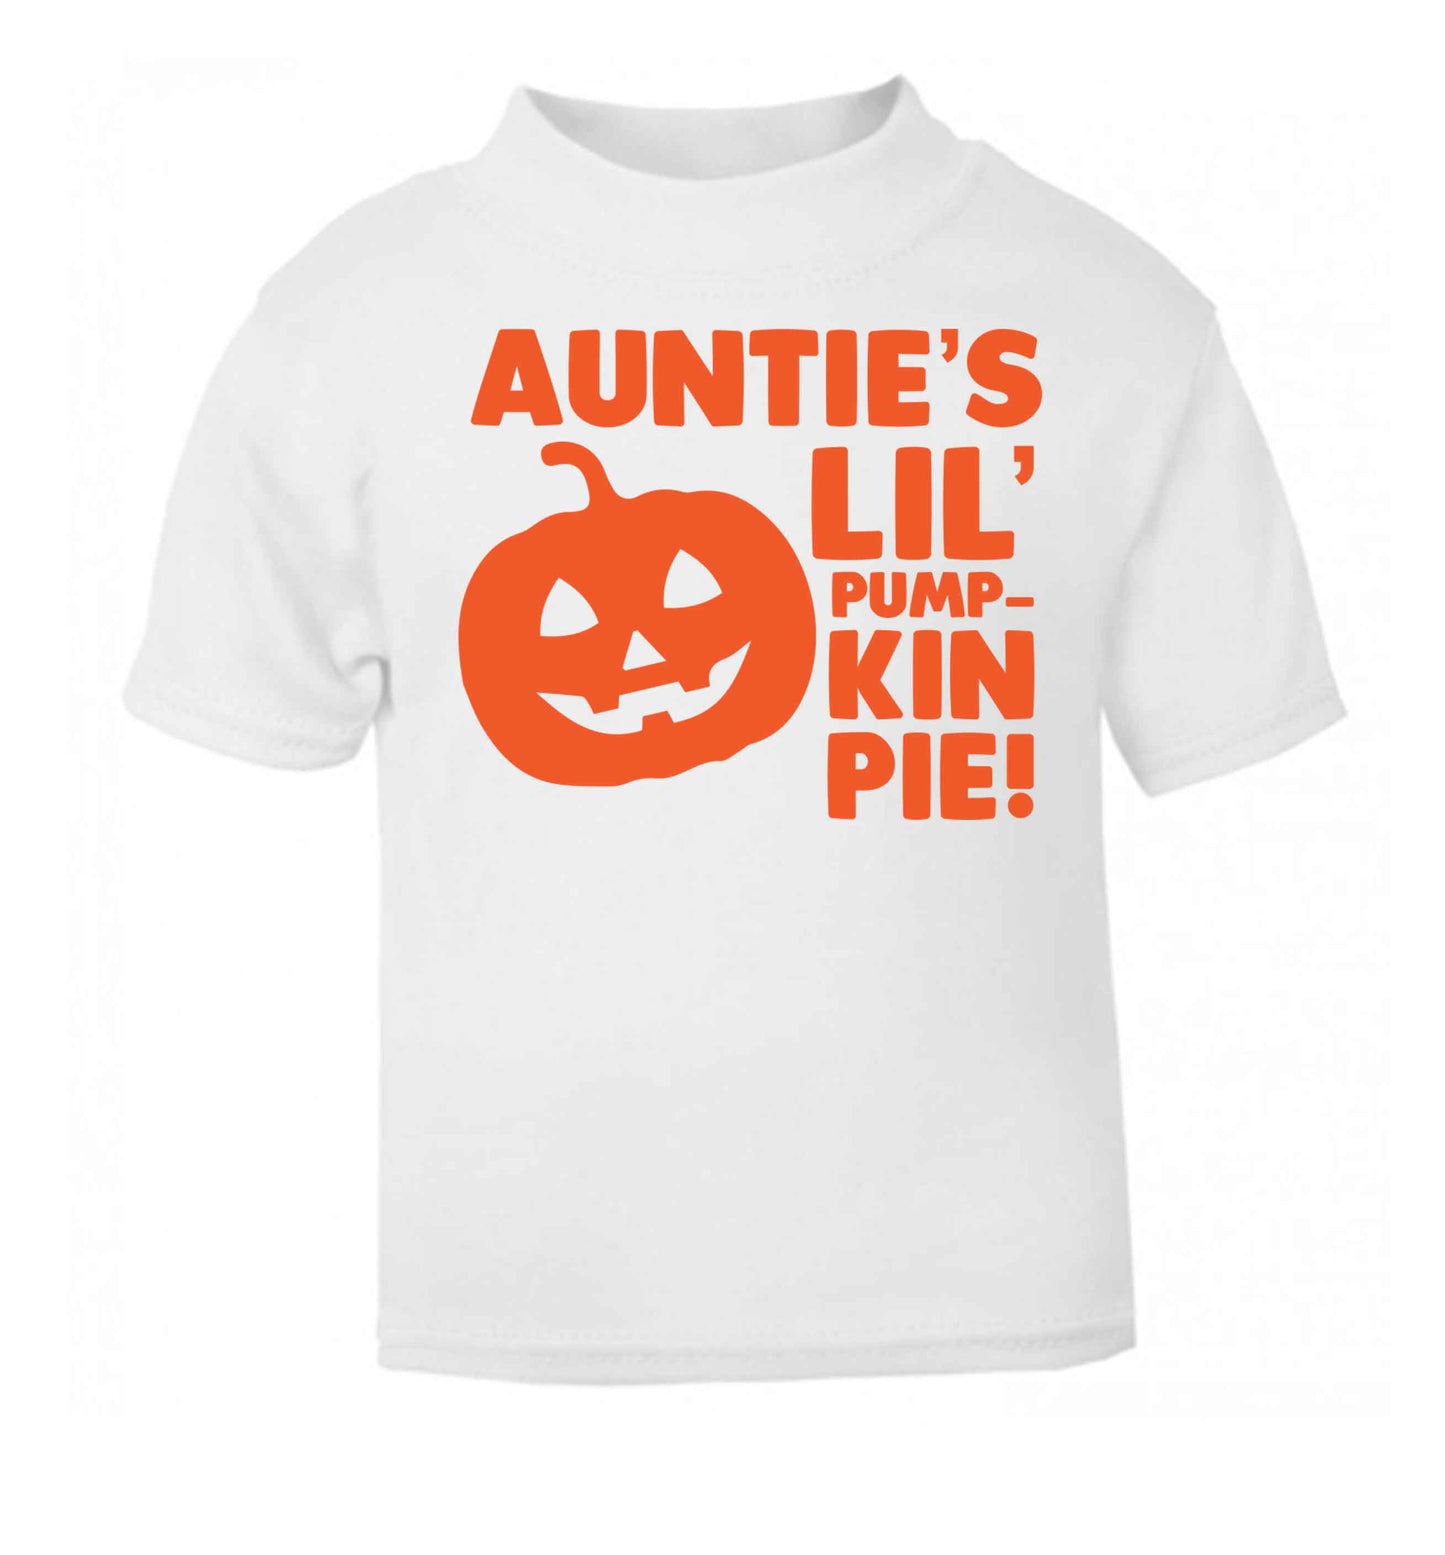 Auntie's lil' pumpkin pie white baby toddler Tshirt 2 Years